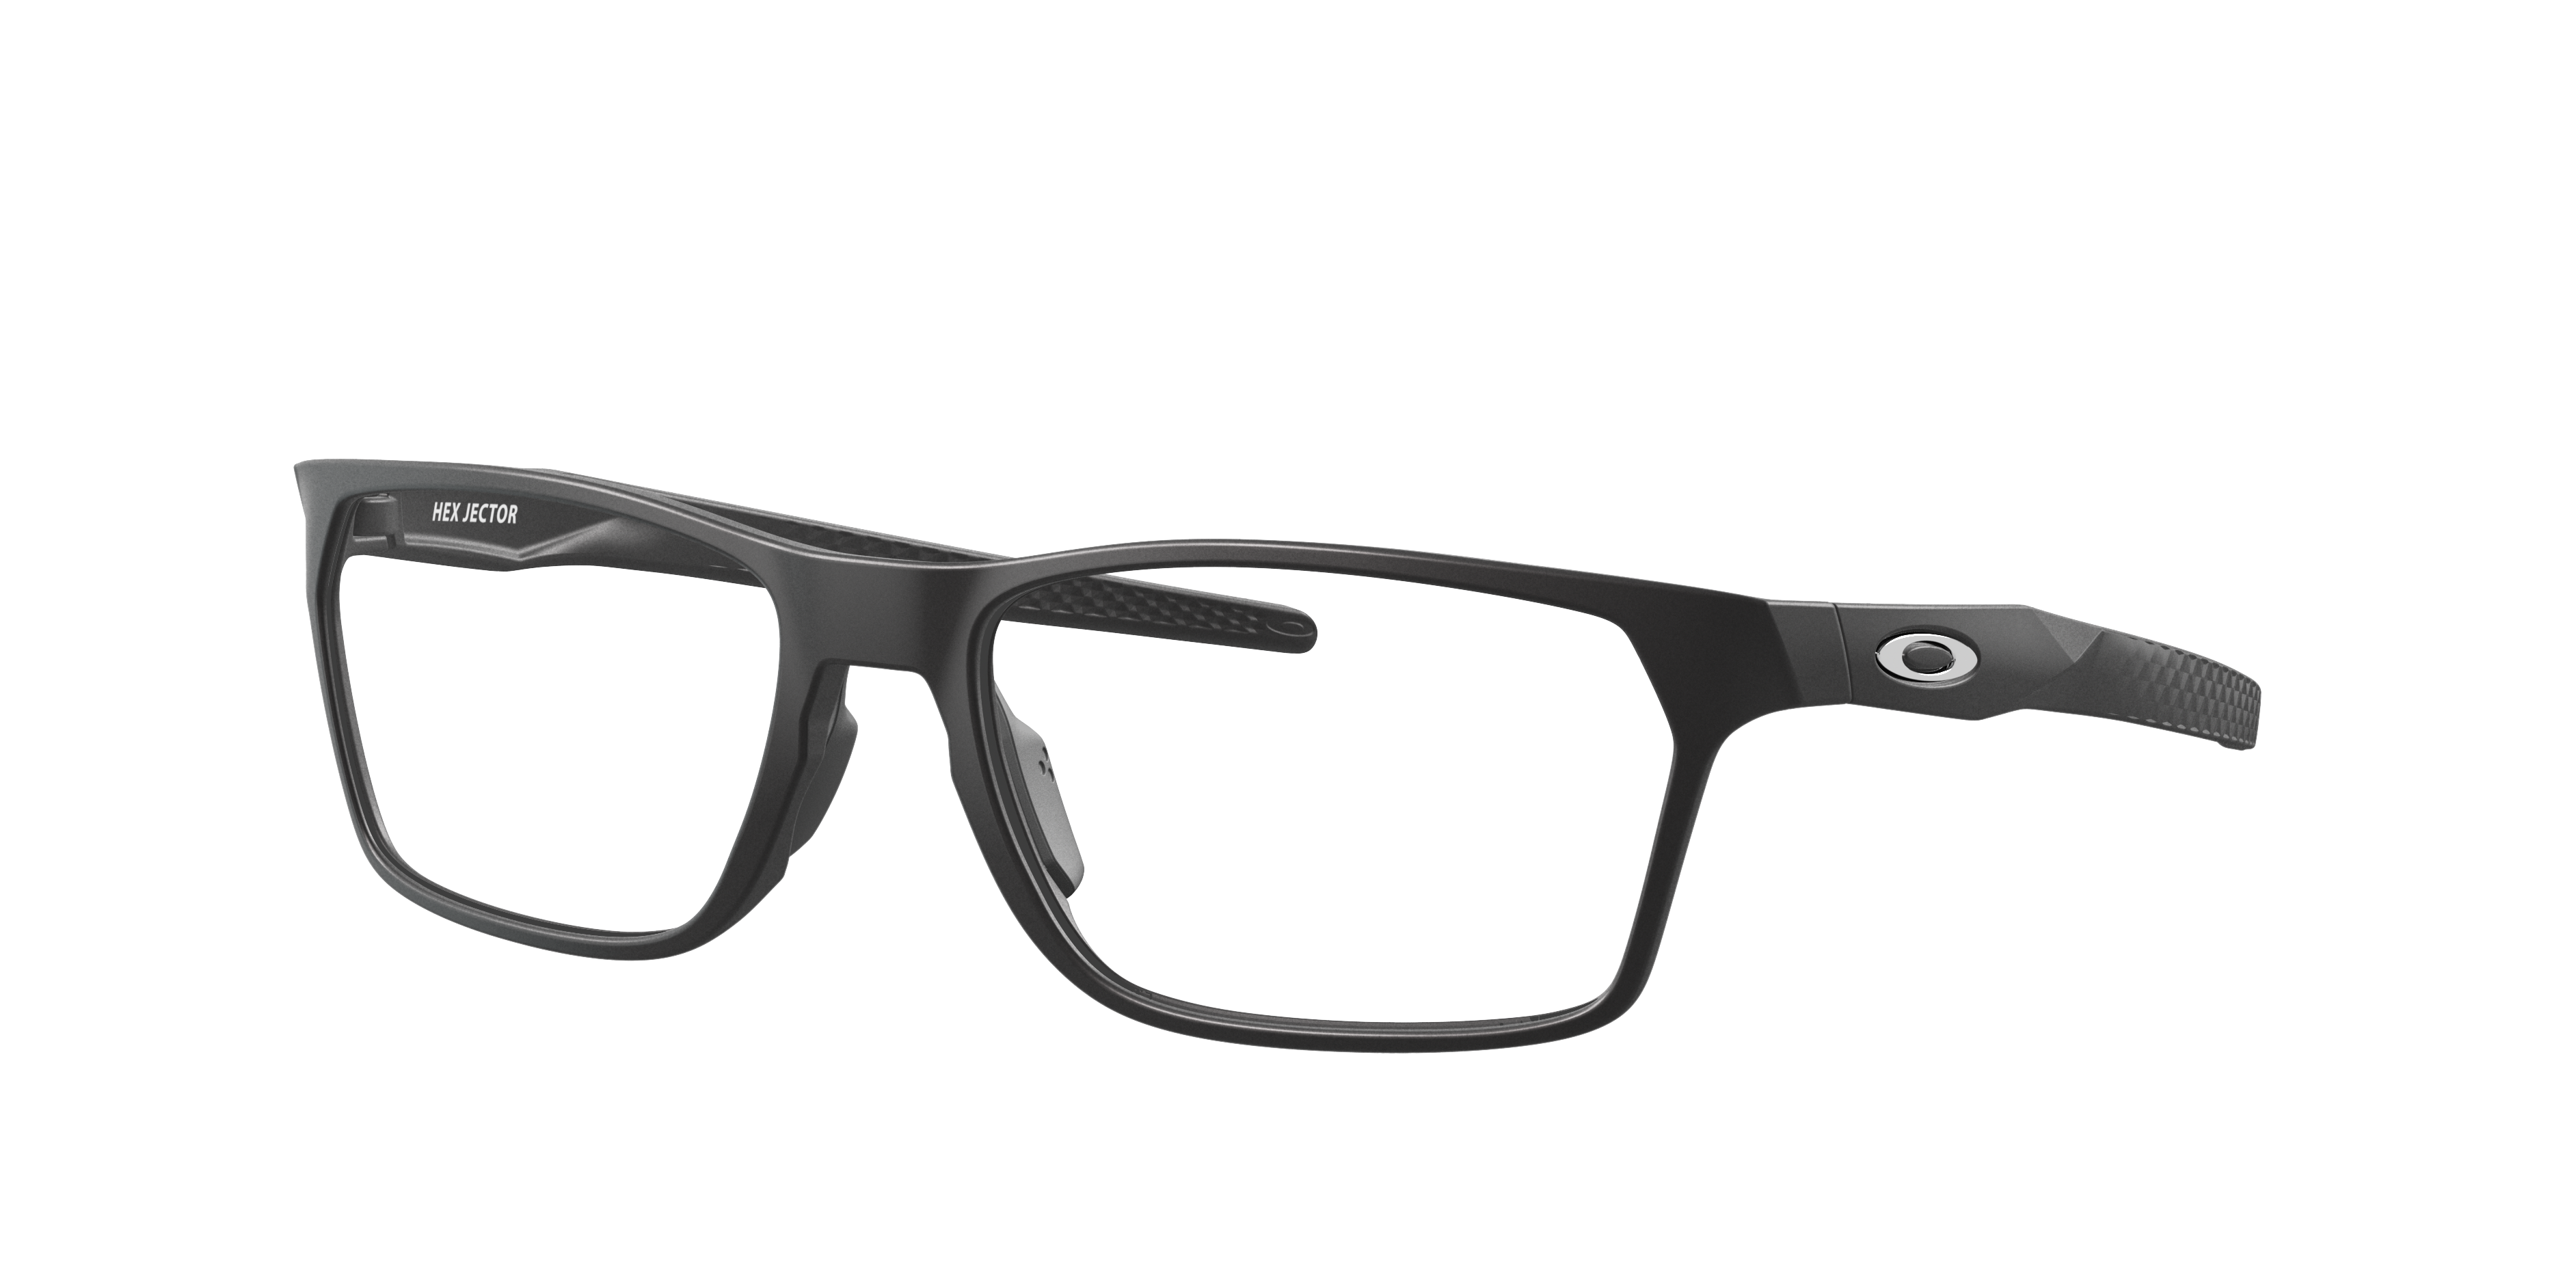 Oakley Encoder Dark Galaxy Prizm Road Cricket Sunglasses